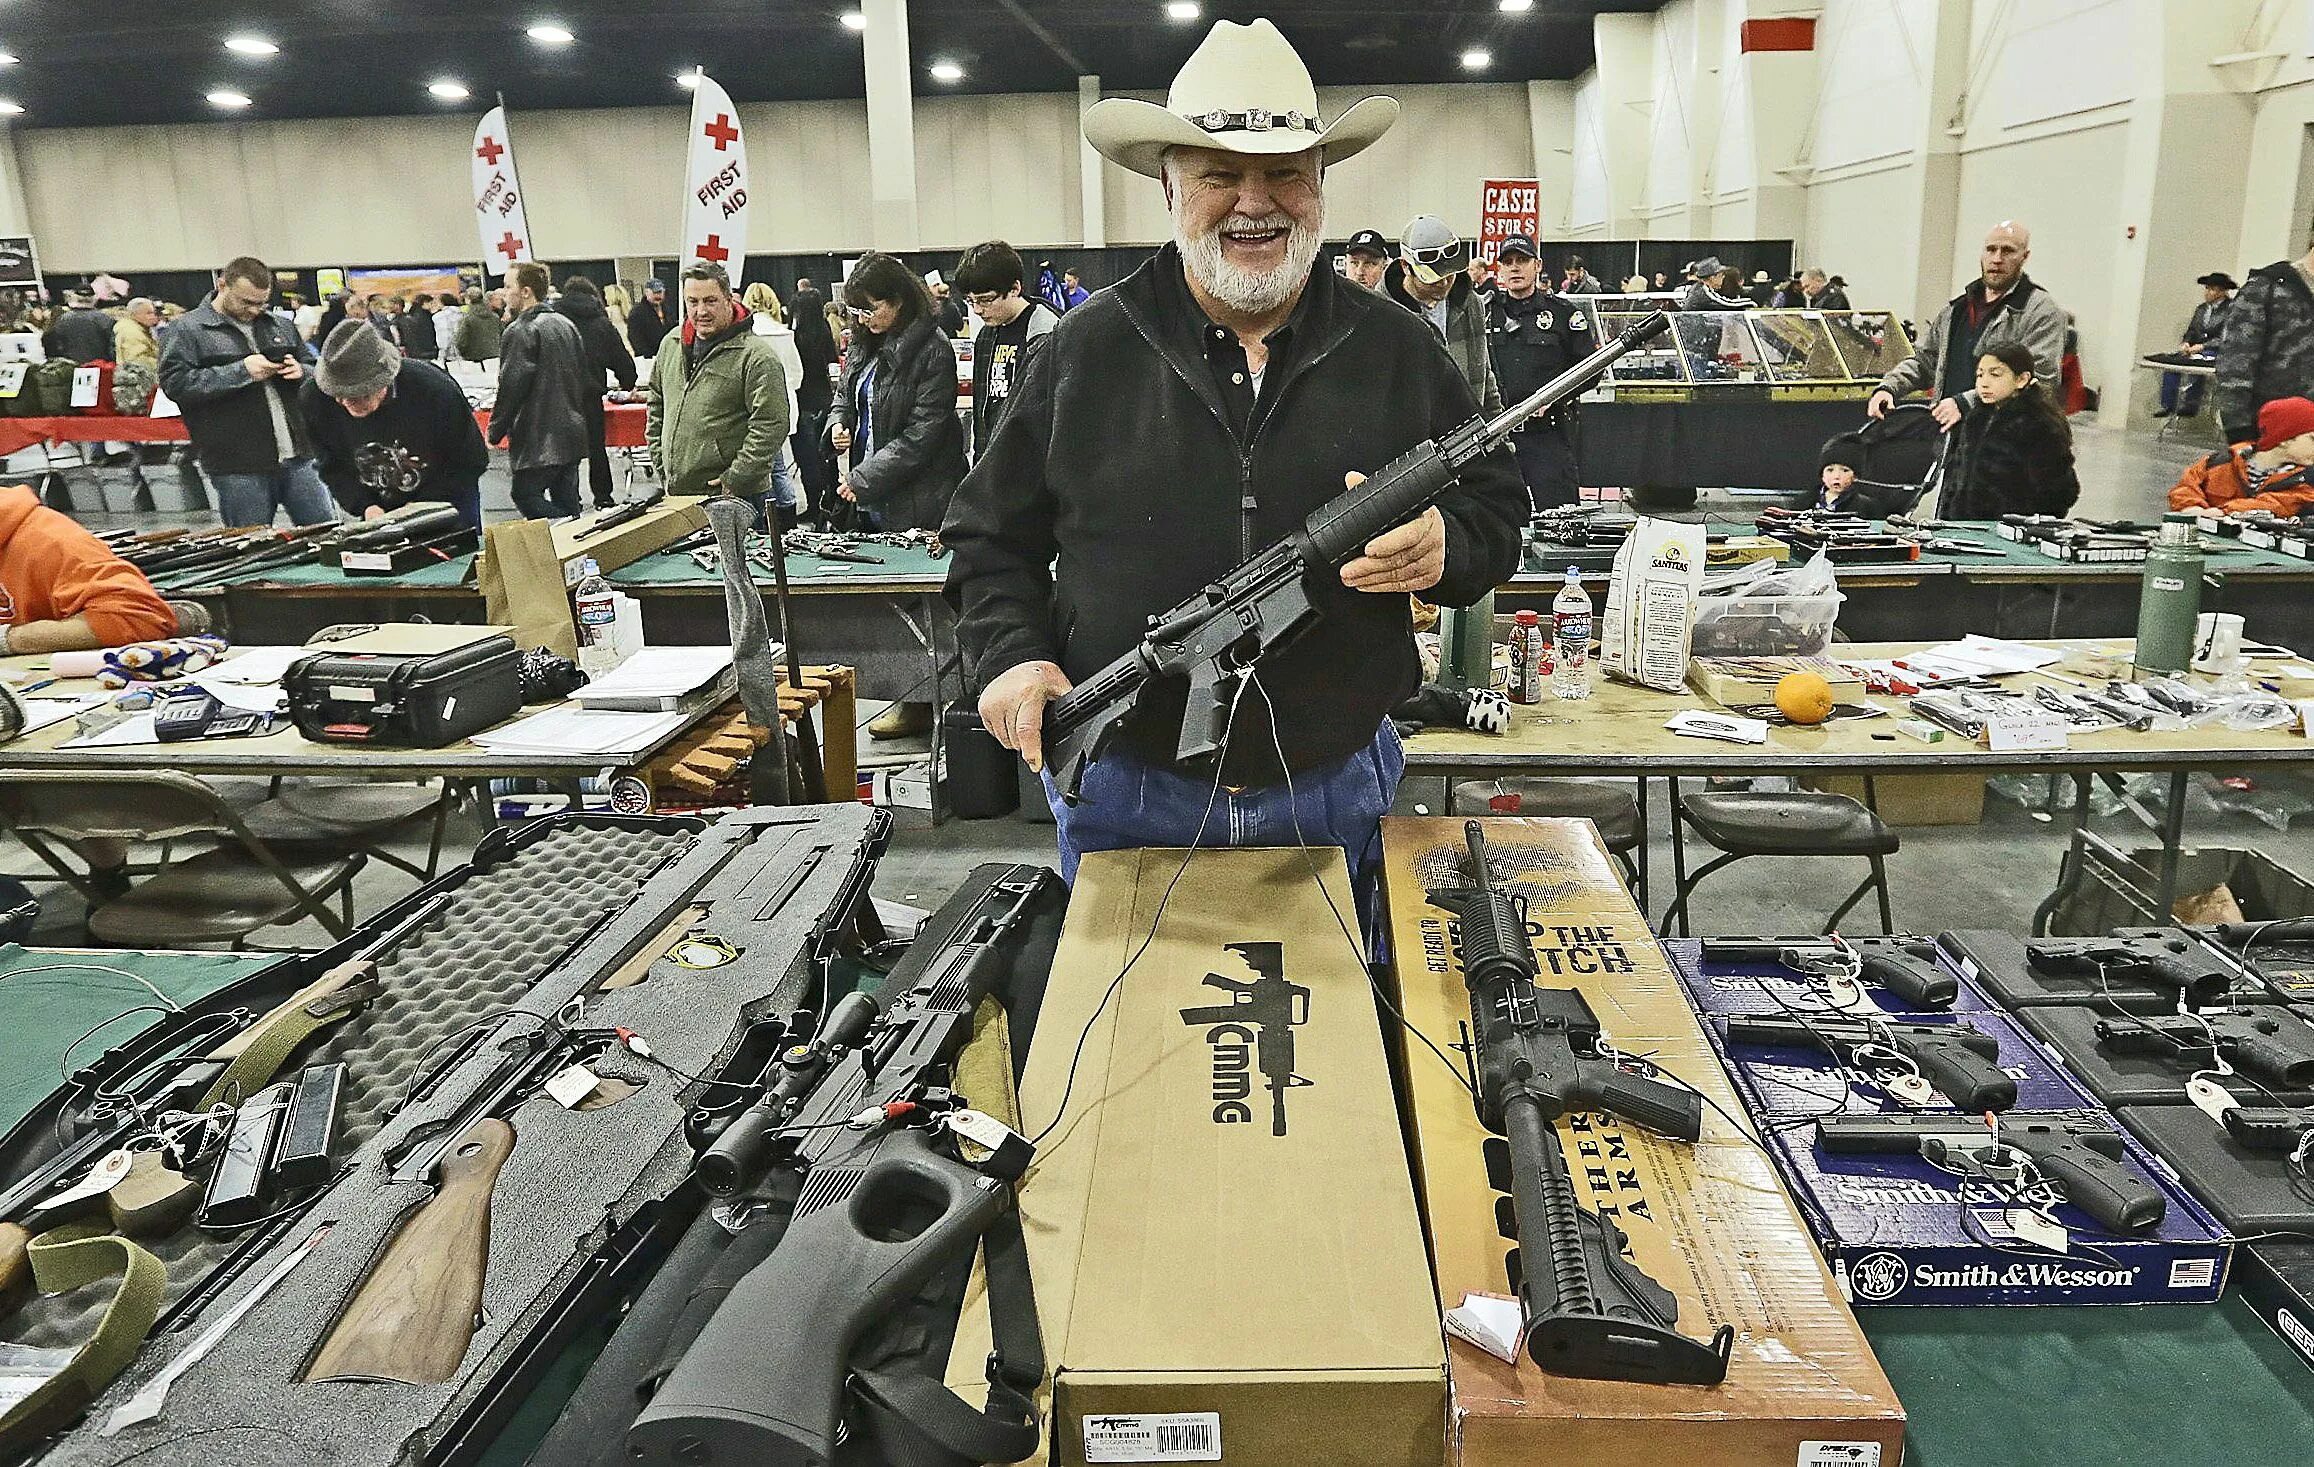 Оружие на гражданских судах. Ярмарка оружия в США. Оружейный магазин в Техасе США. Штат Техас оружейные магазин. Рынок оружия.